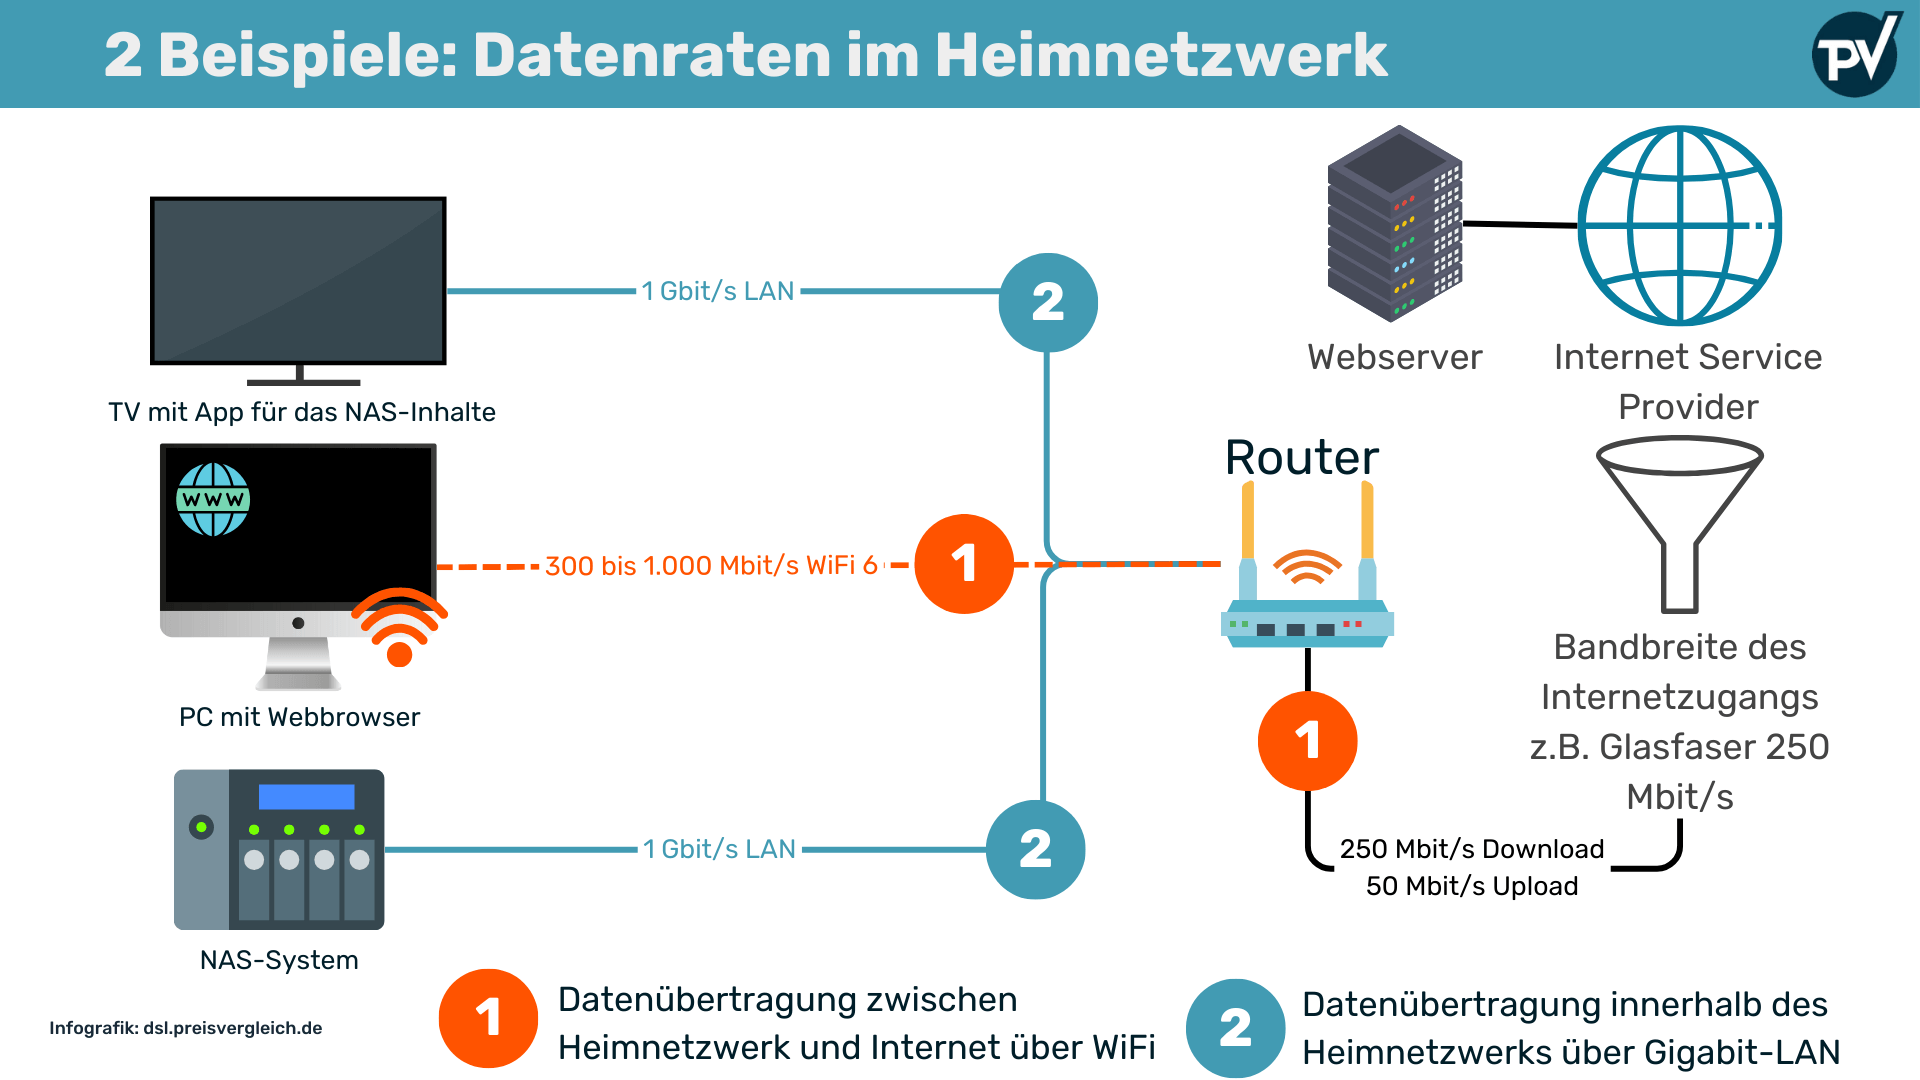 2 Beispiele der Datenübertragung im Heimnetzwerk: WiFi, LAN und Internetverbindung